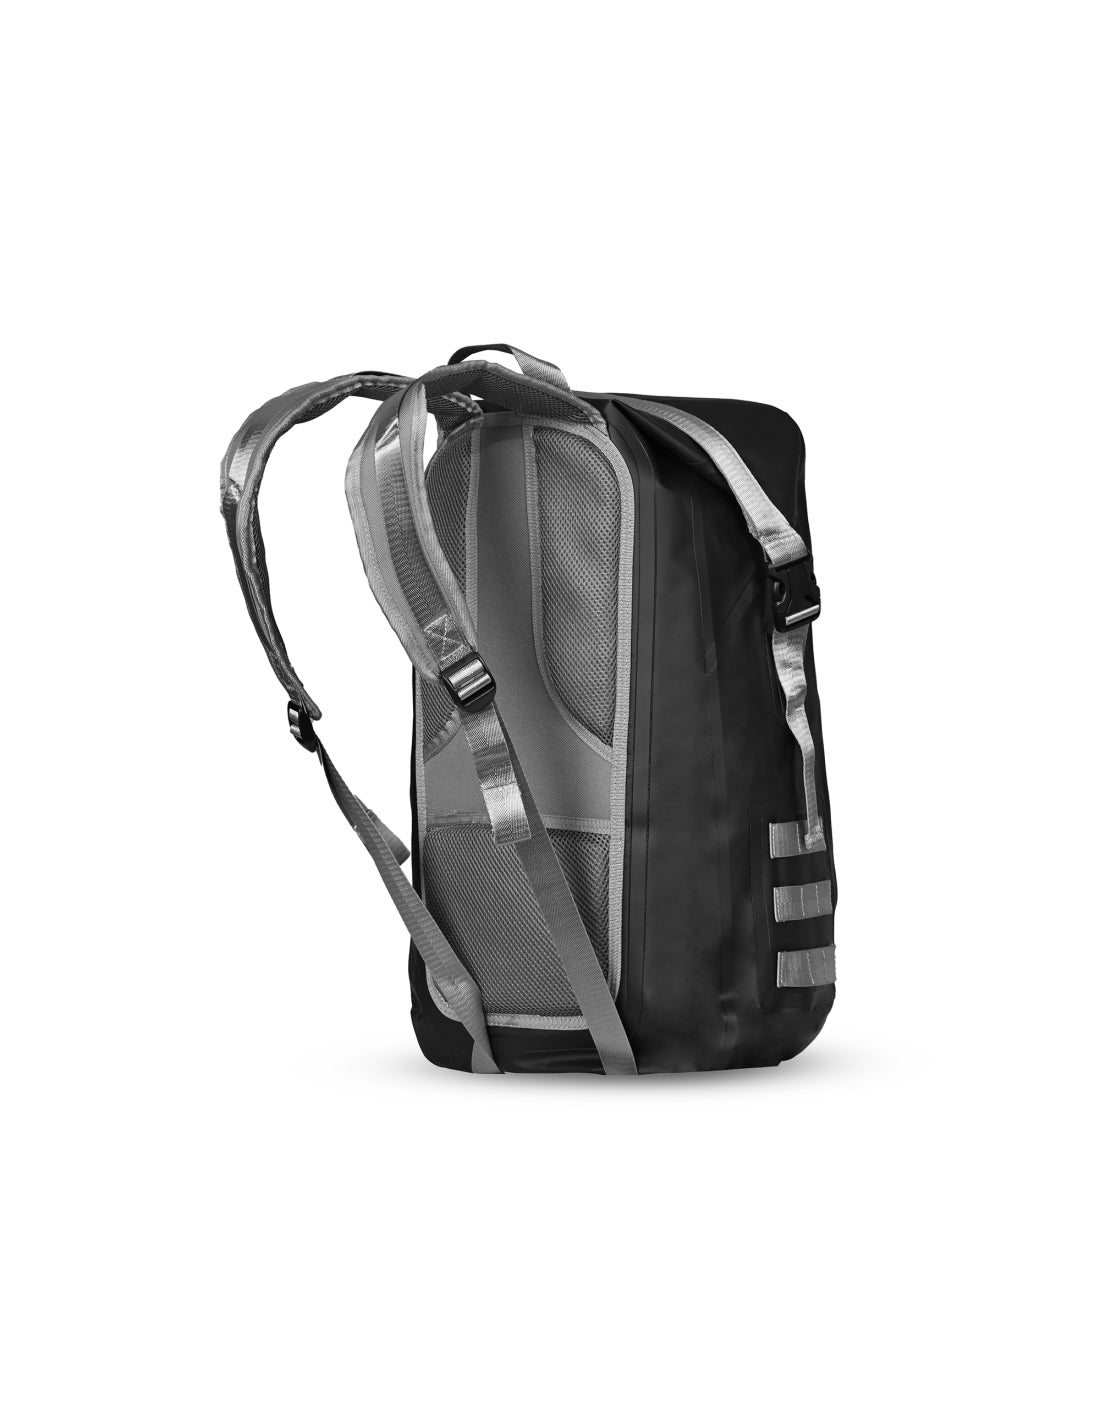 BELA Splash Pack - Black Grey - Motorcycle Bag images